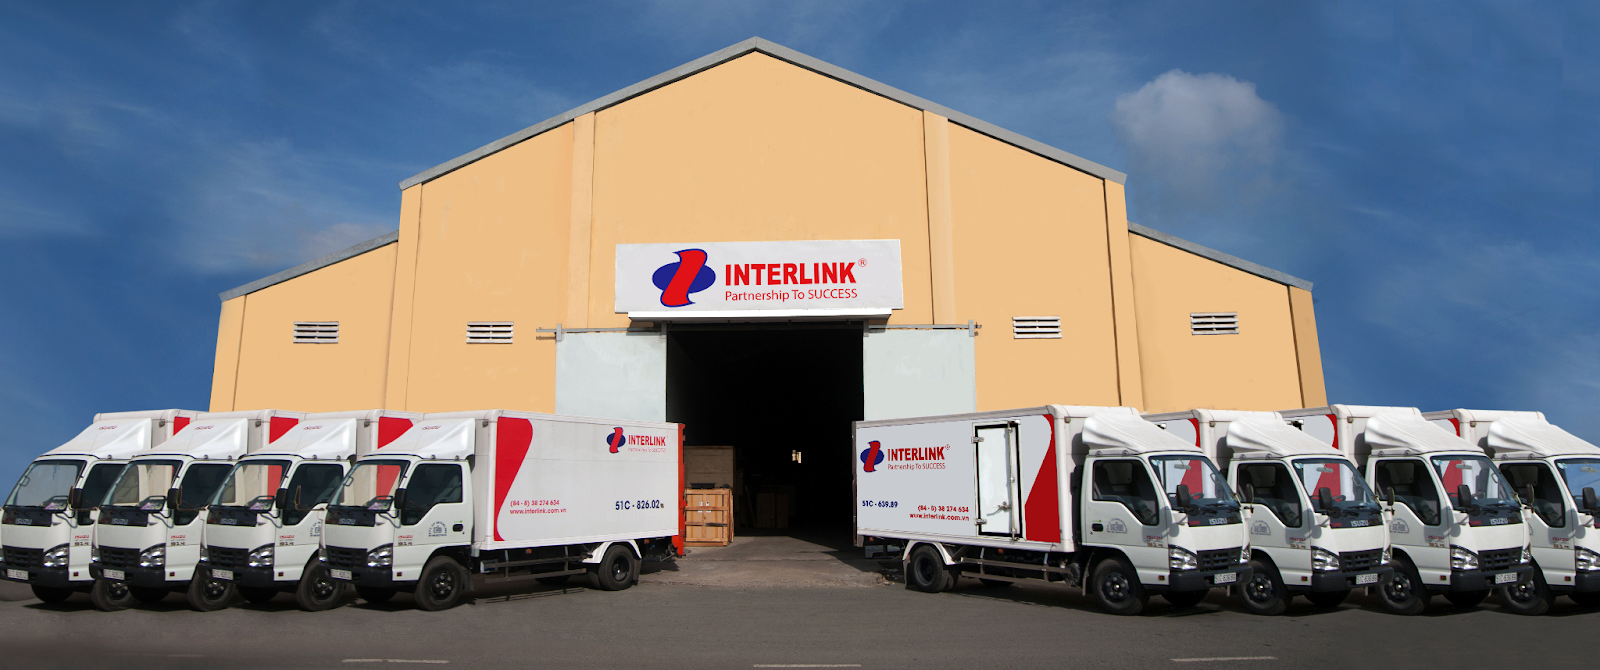 Dịch vụ cho thuê kho và logistics của Interlink